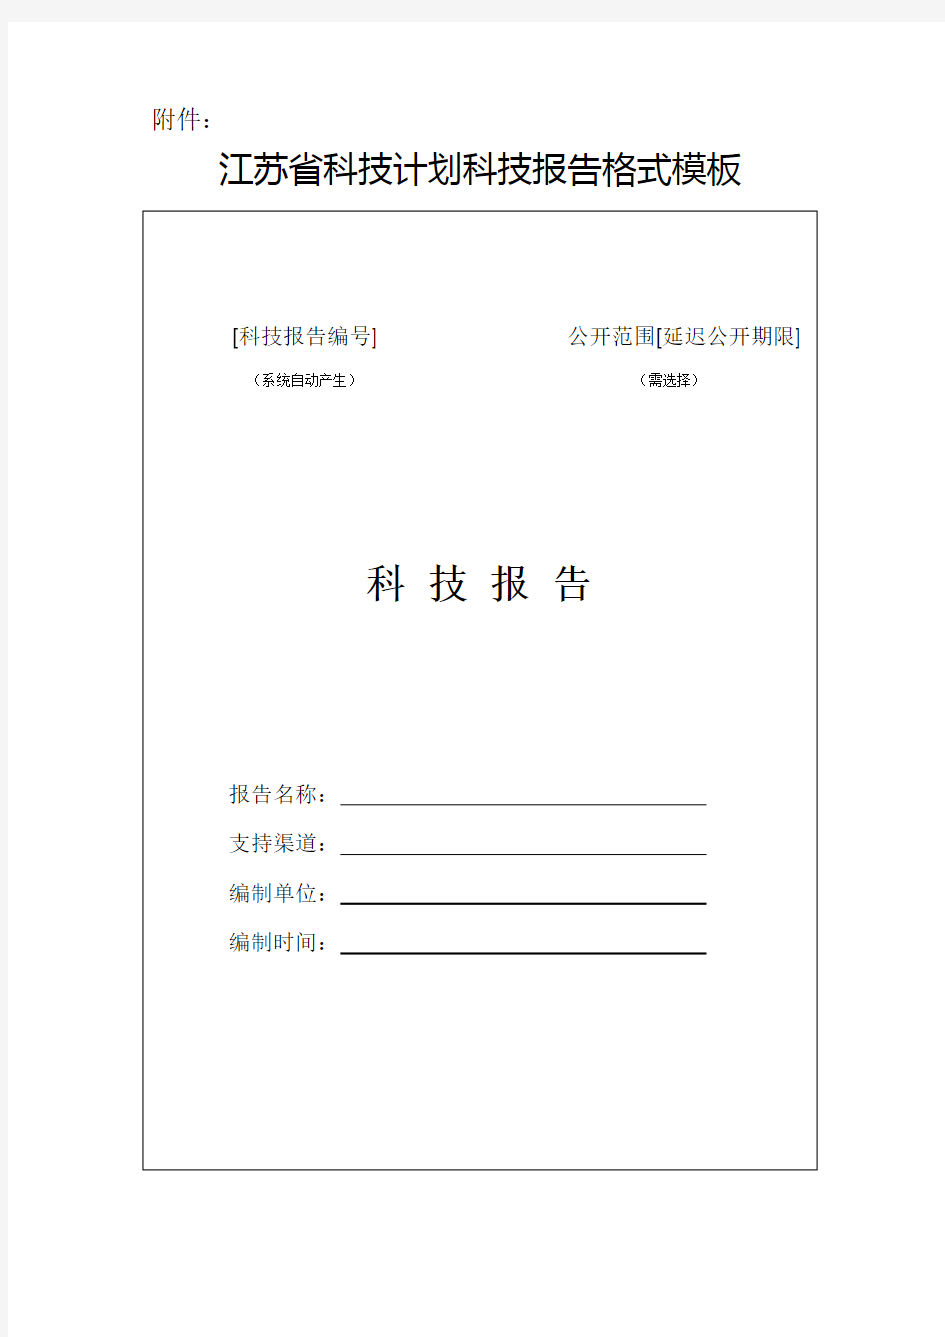 94_江苏省科技报告格式模板